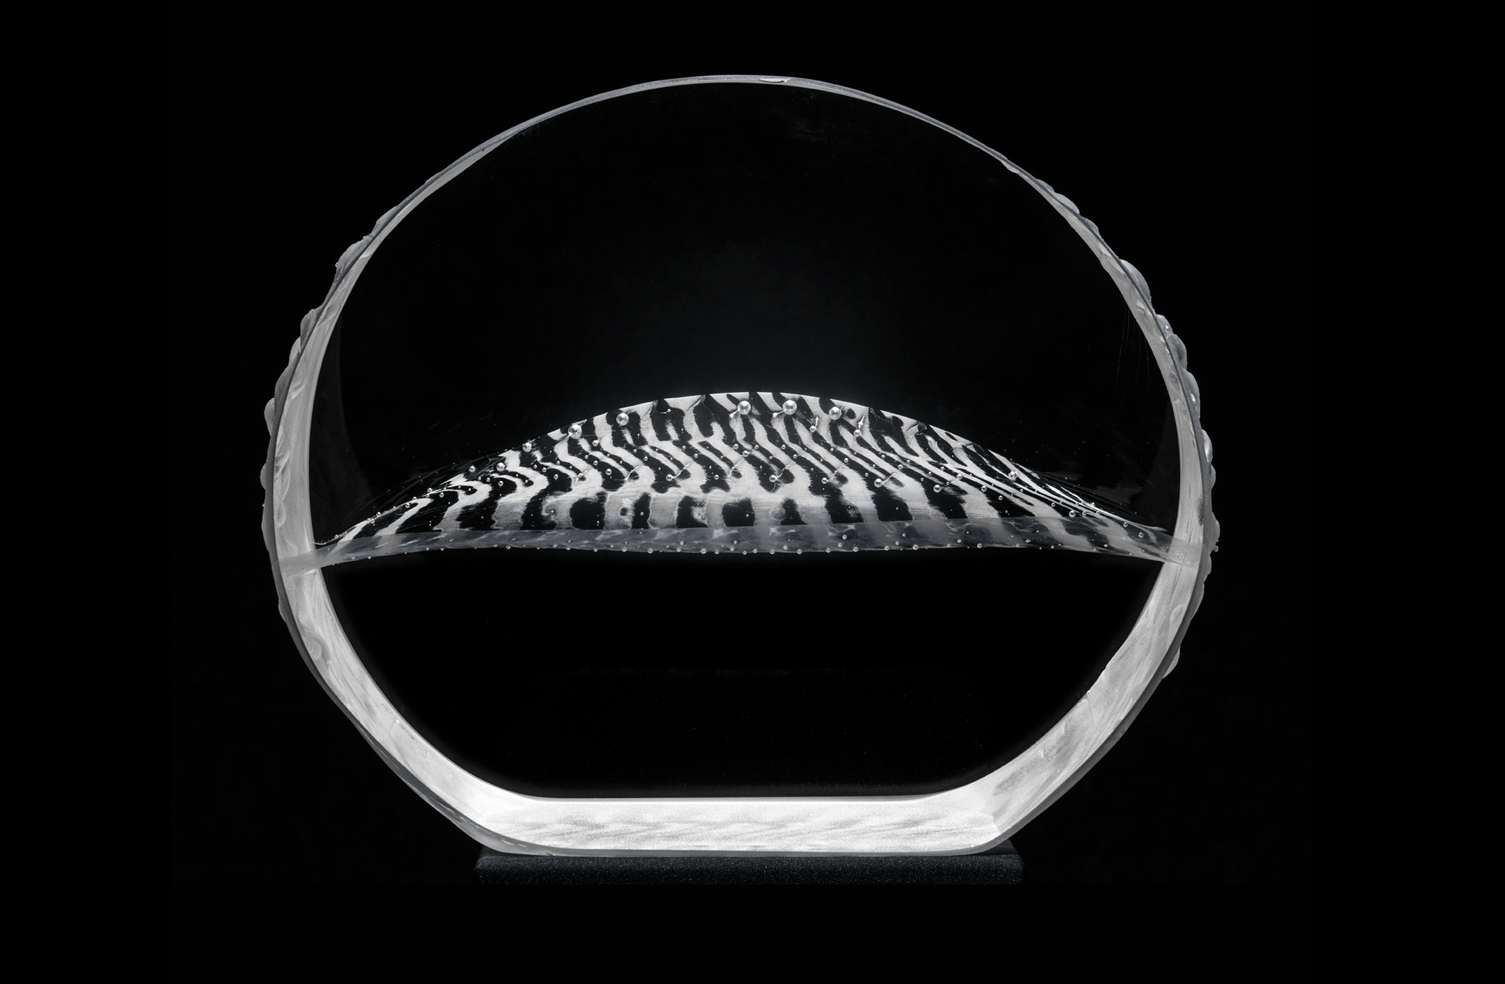 Eclipse glass sculpture